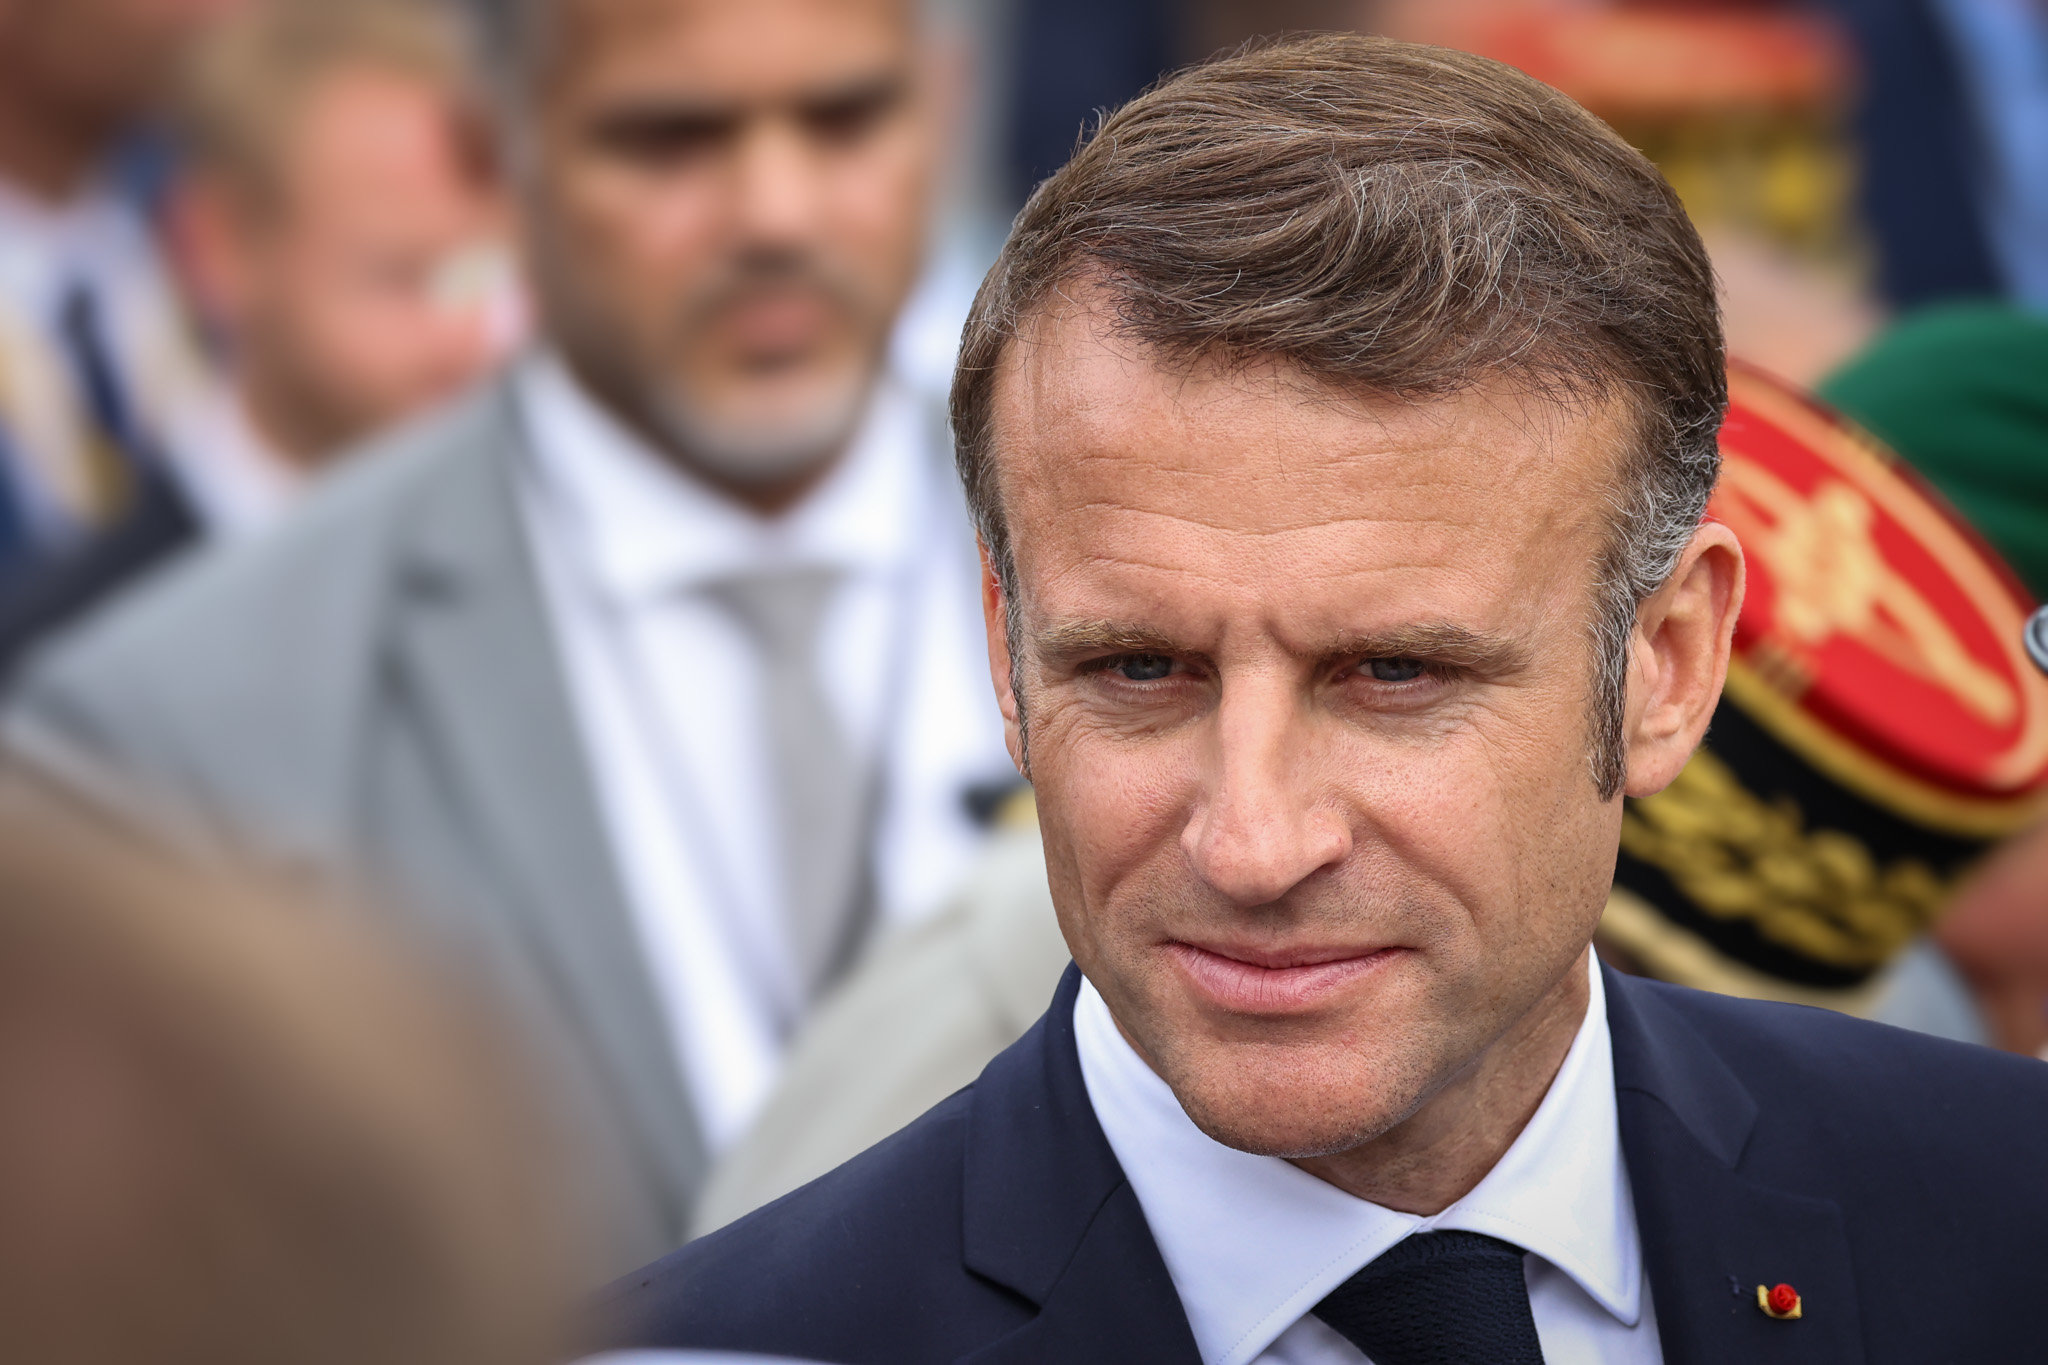 Le président de la République, invité du journal de France 2 ce mardi, a assuré ne pas prévoir de nommer un Premier ministre rapidement. LP/Fred Dugit